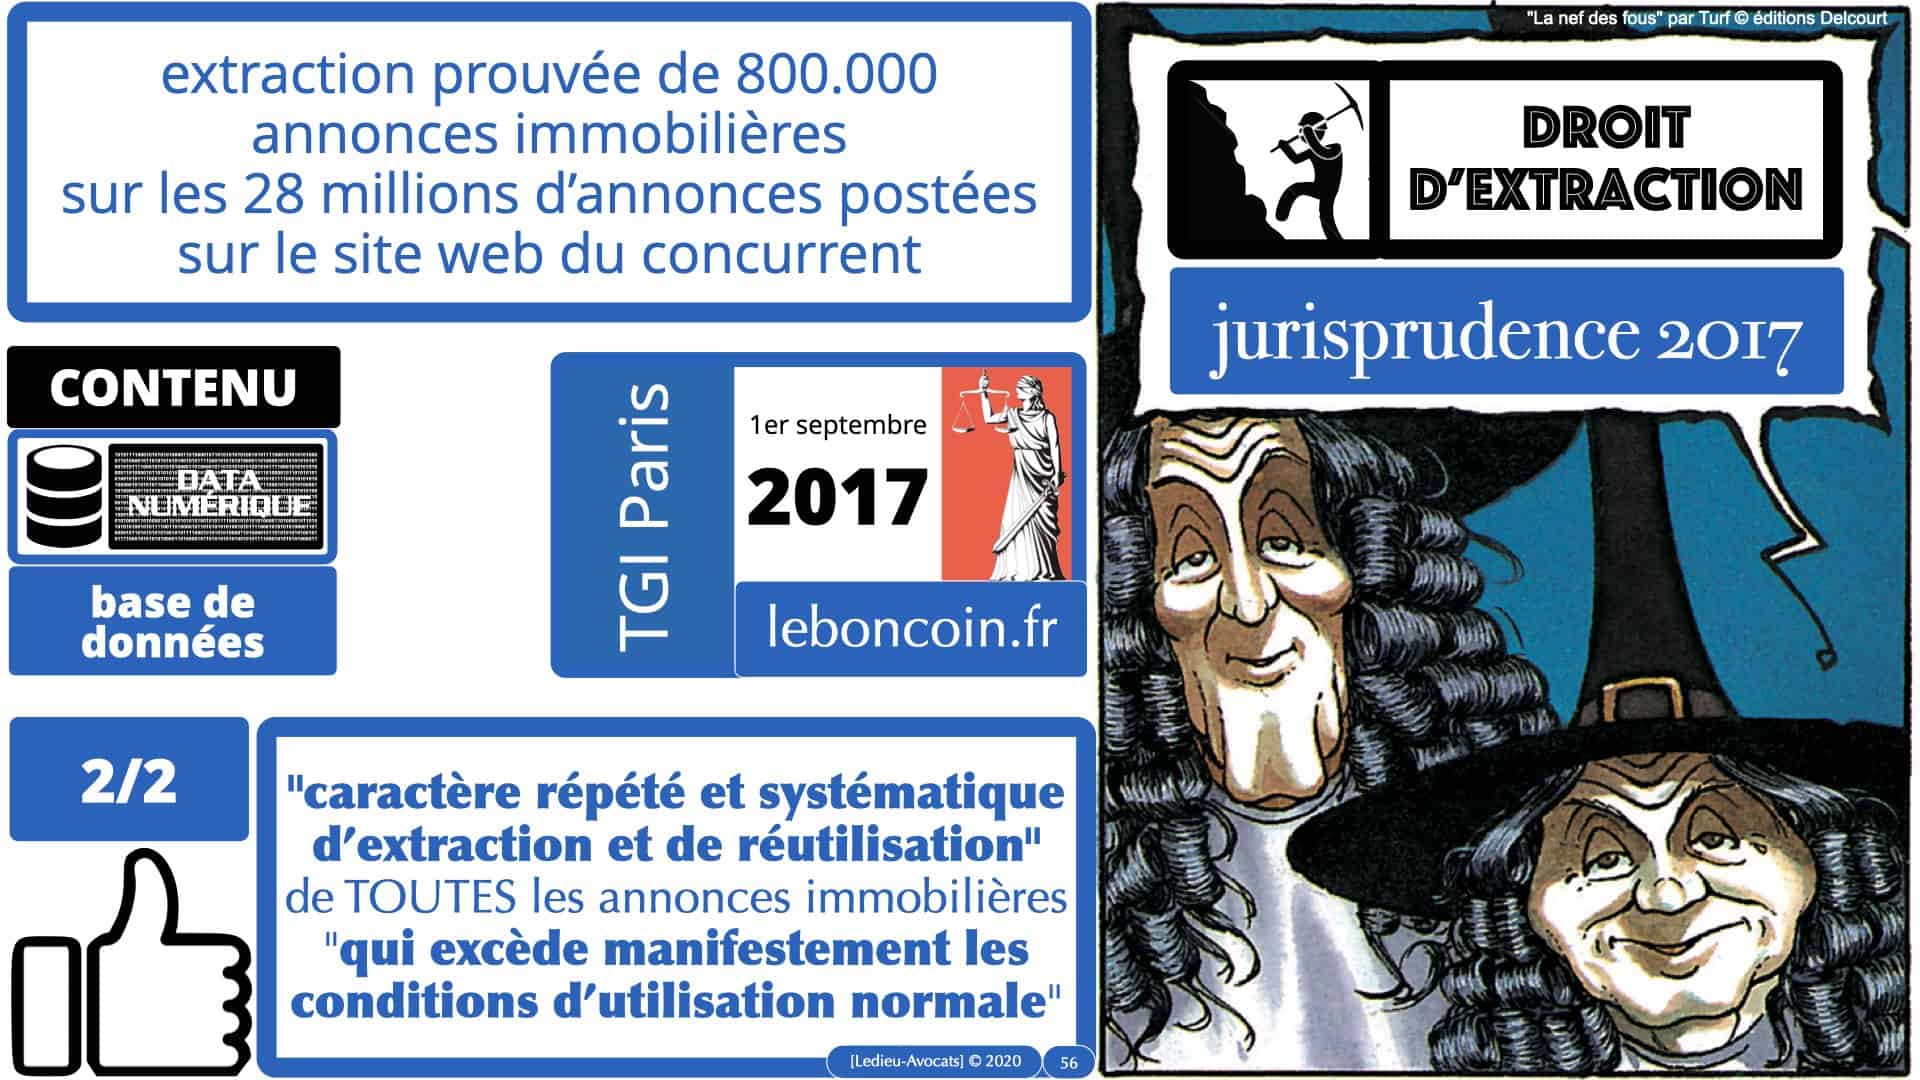 314 PRO BTP © Ledieu-avocat 03-12-2020.056